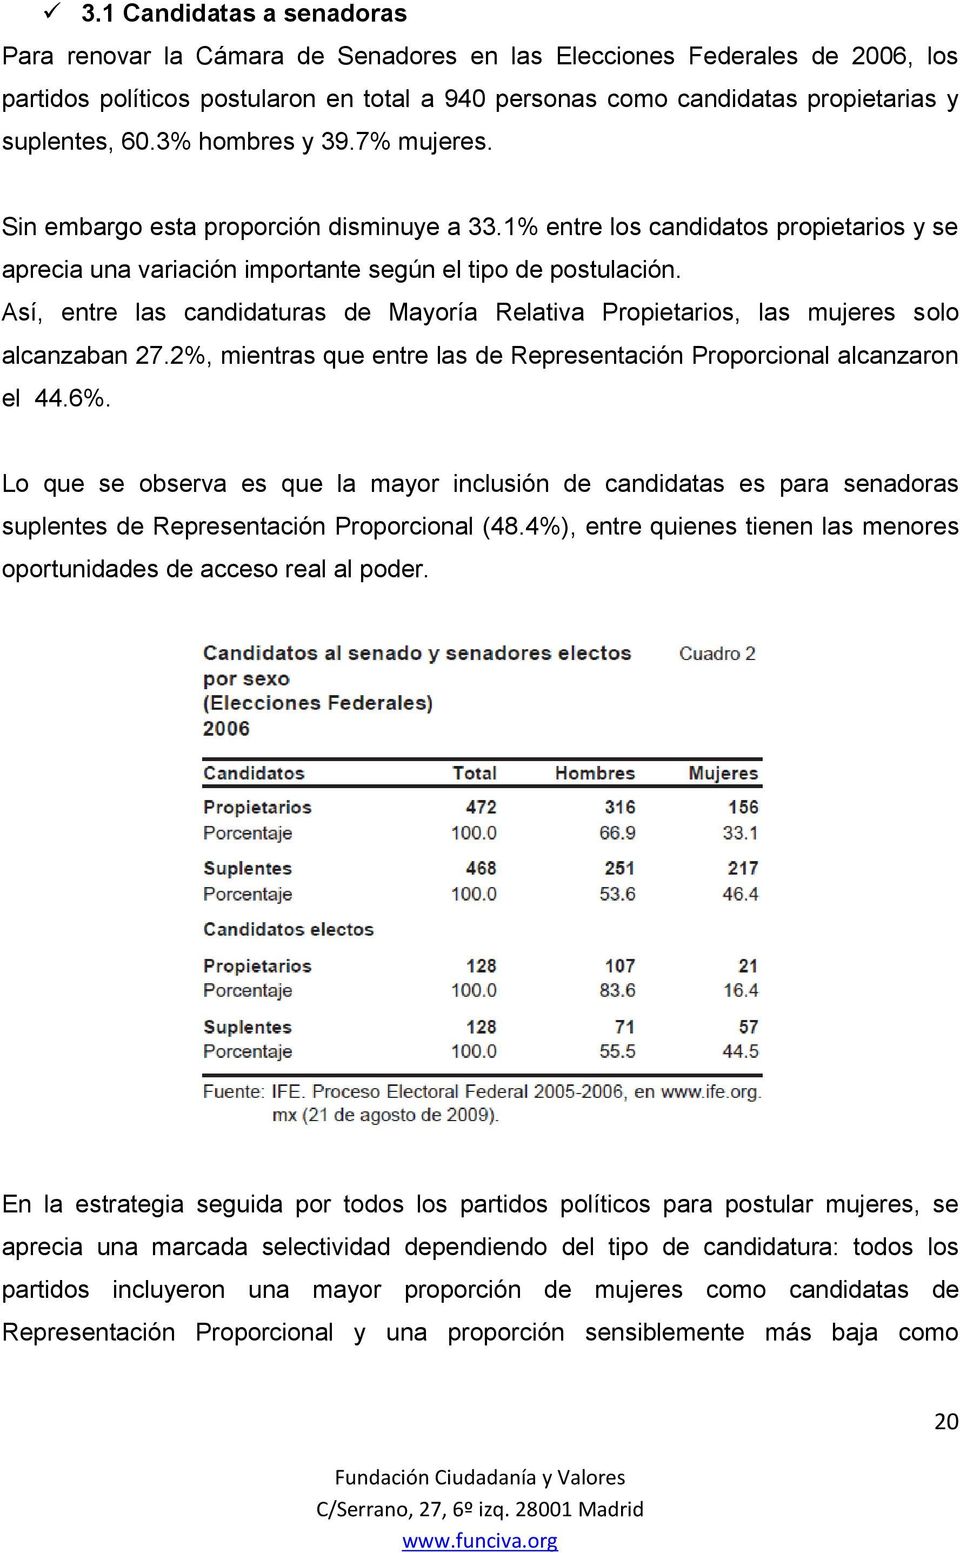 Así, entre las candidaturas de Mayoría Relativa Propietarios, las mujeres solo alcanzaban 27.2%, mientras que entre las de Representación Proporcional alcanzaron el 44.6%.